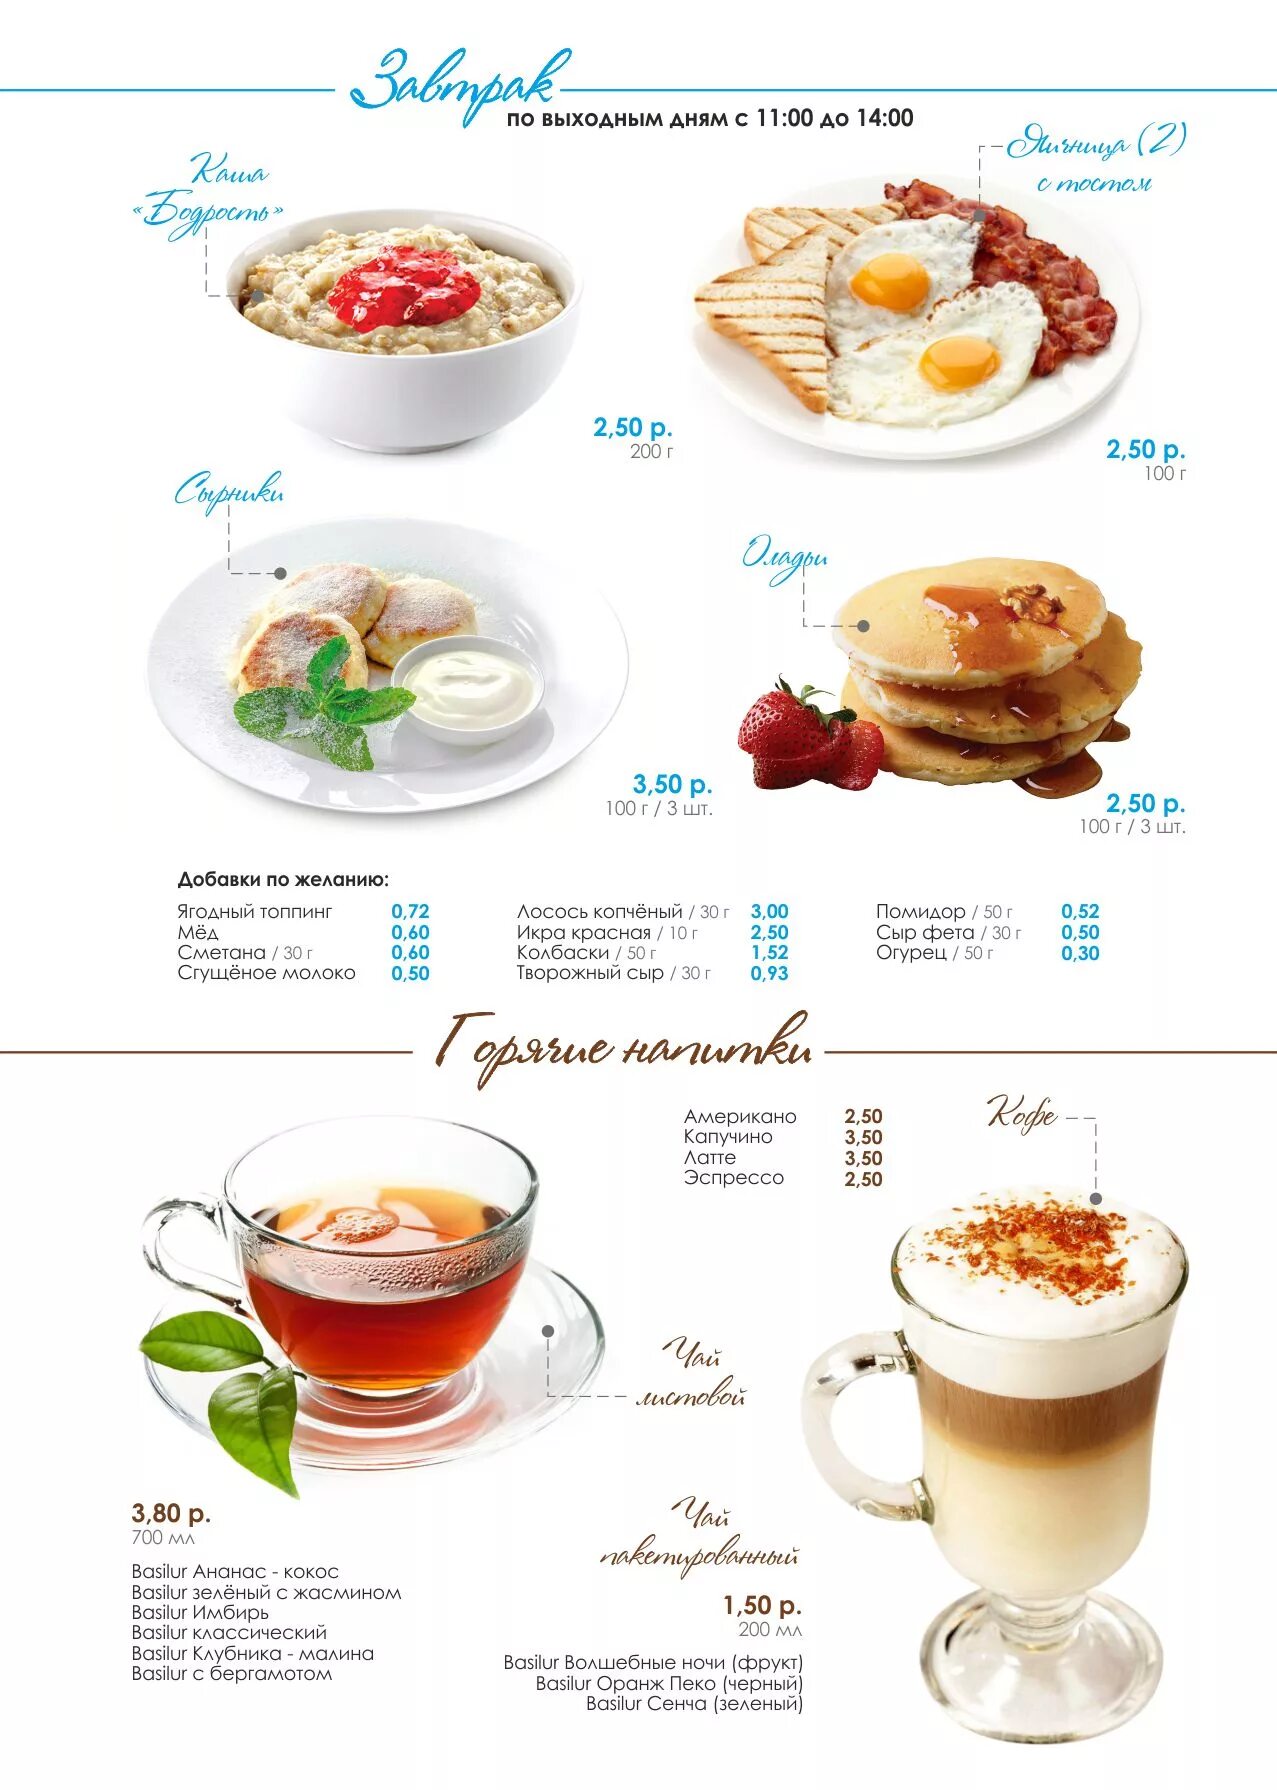 Завтрак варианты меню. Меню завтраков. Завтраки в кафе меню. Завтраки в кофейне меню. Завтрак в отеле меню.